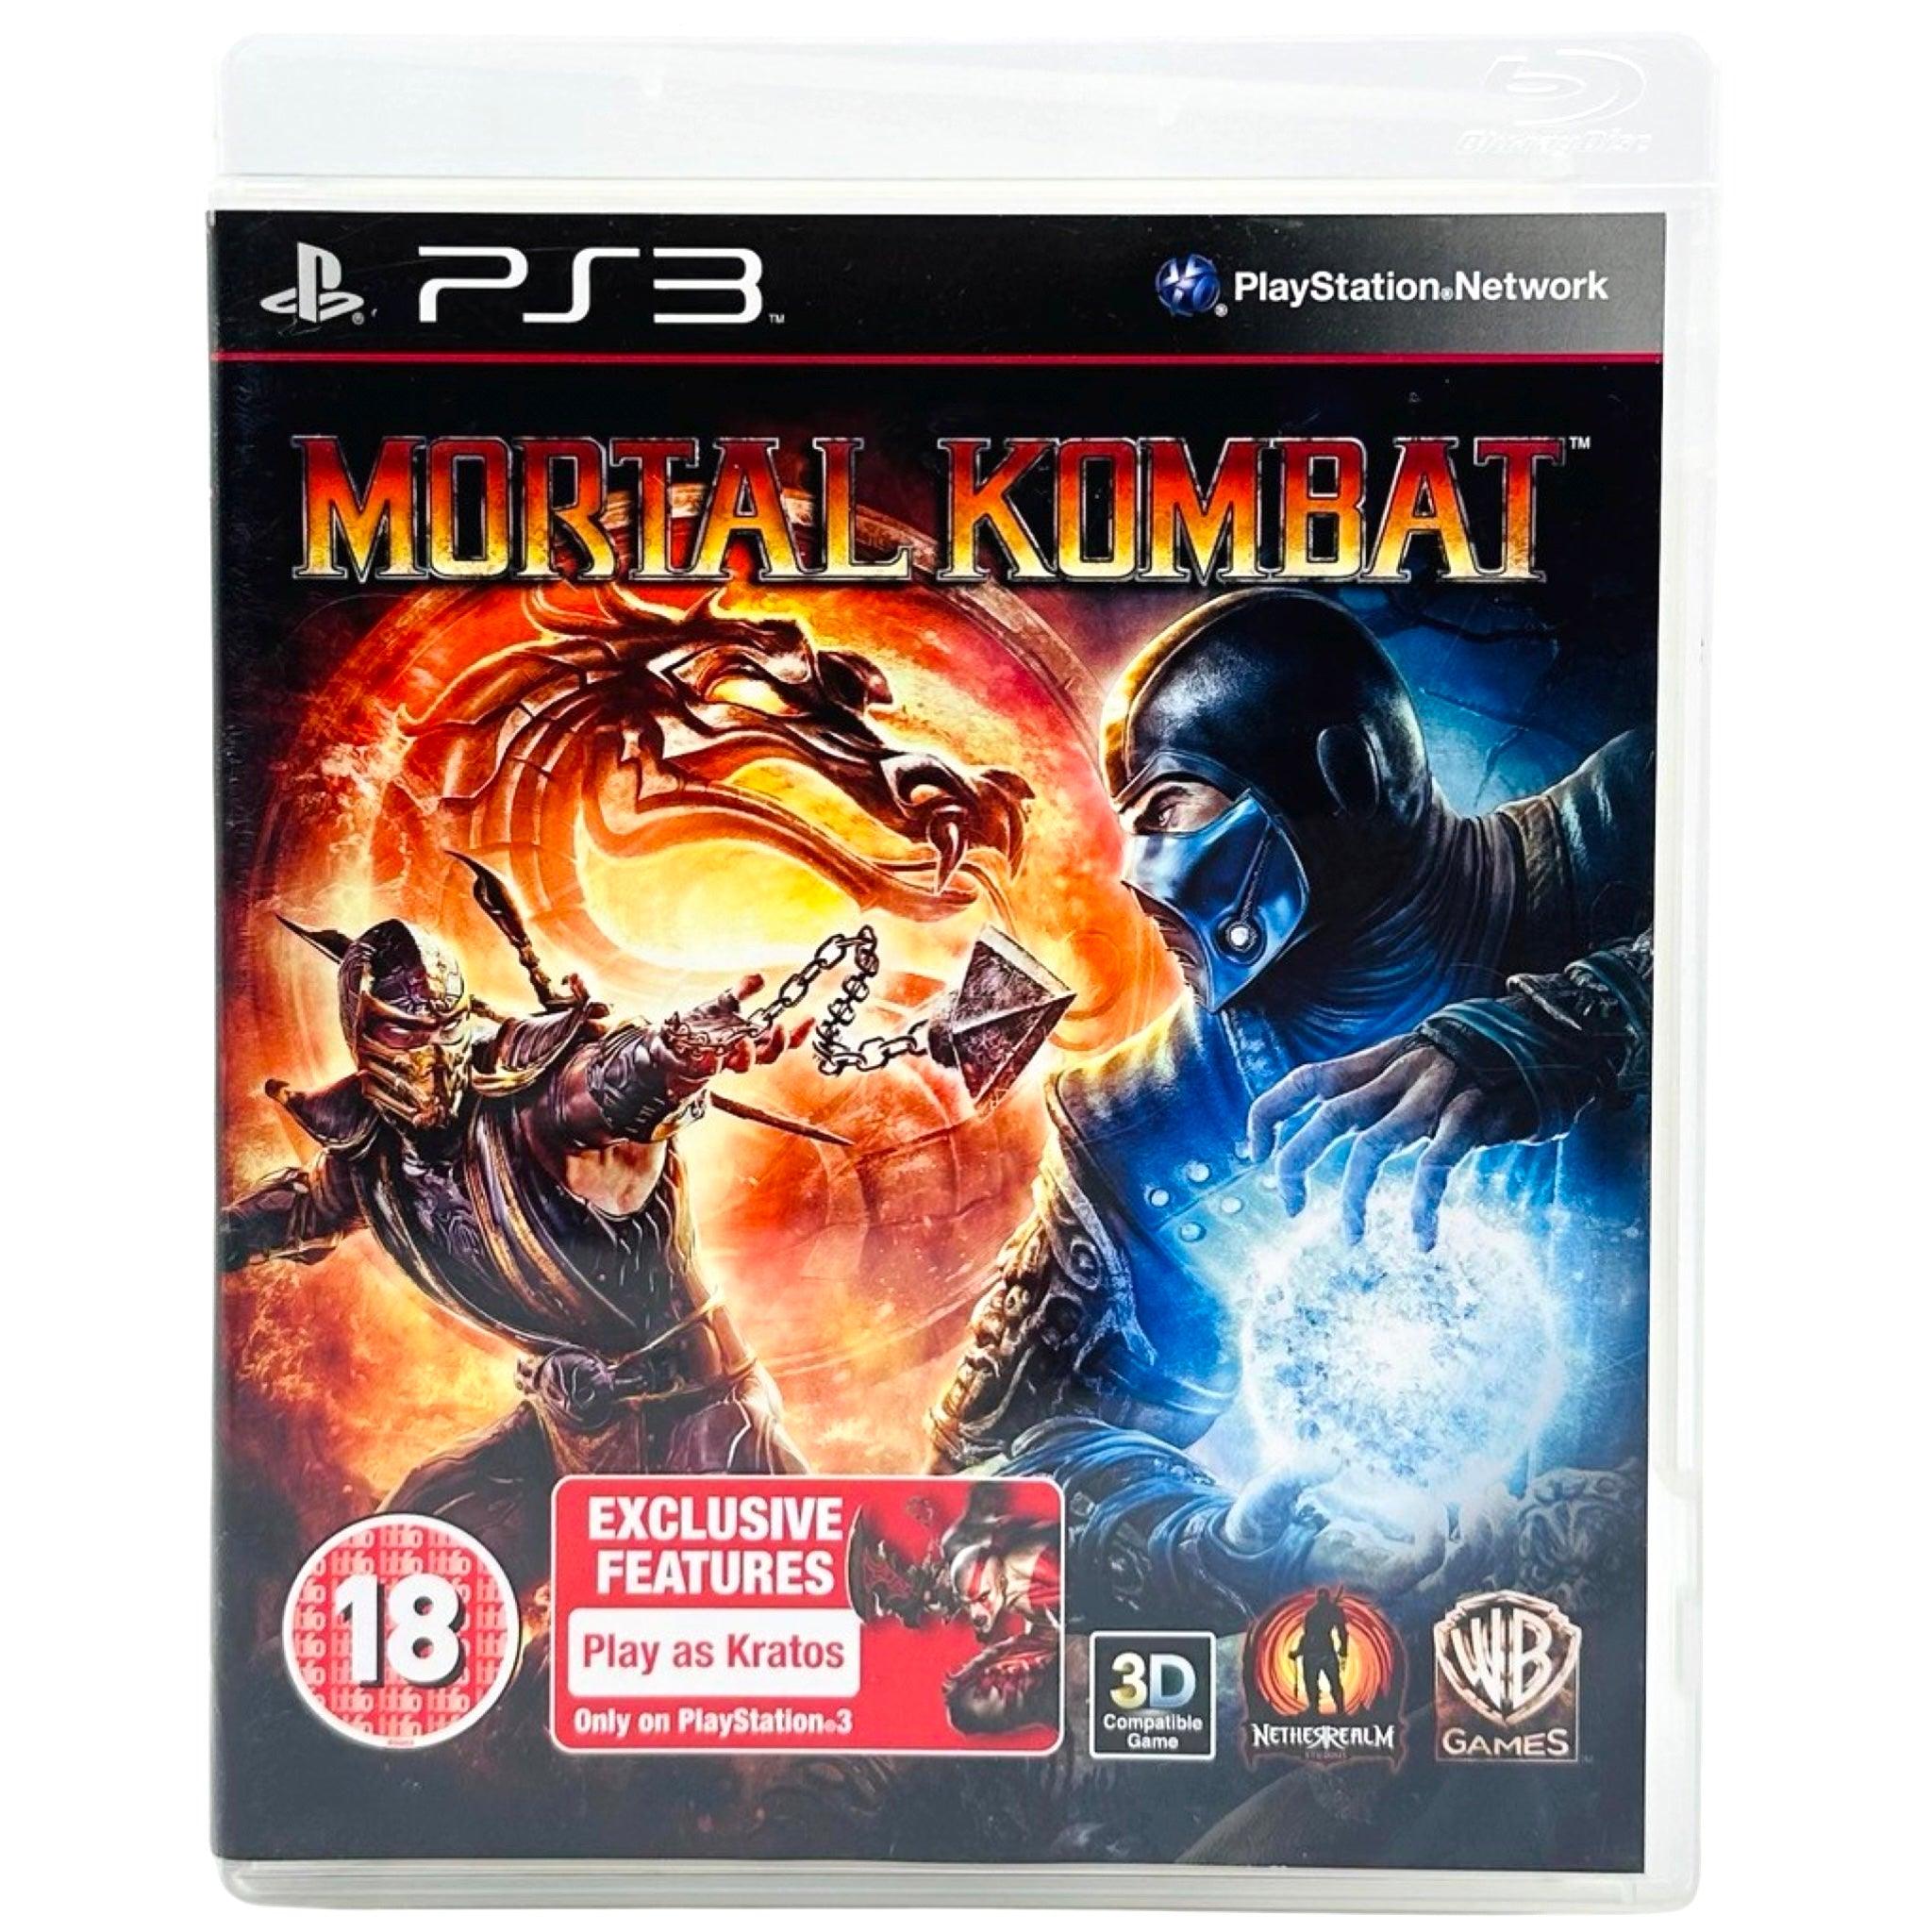 PS3: Mortal Kombat 9 - RetroGaming.no